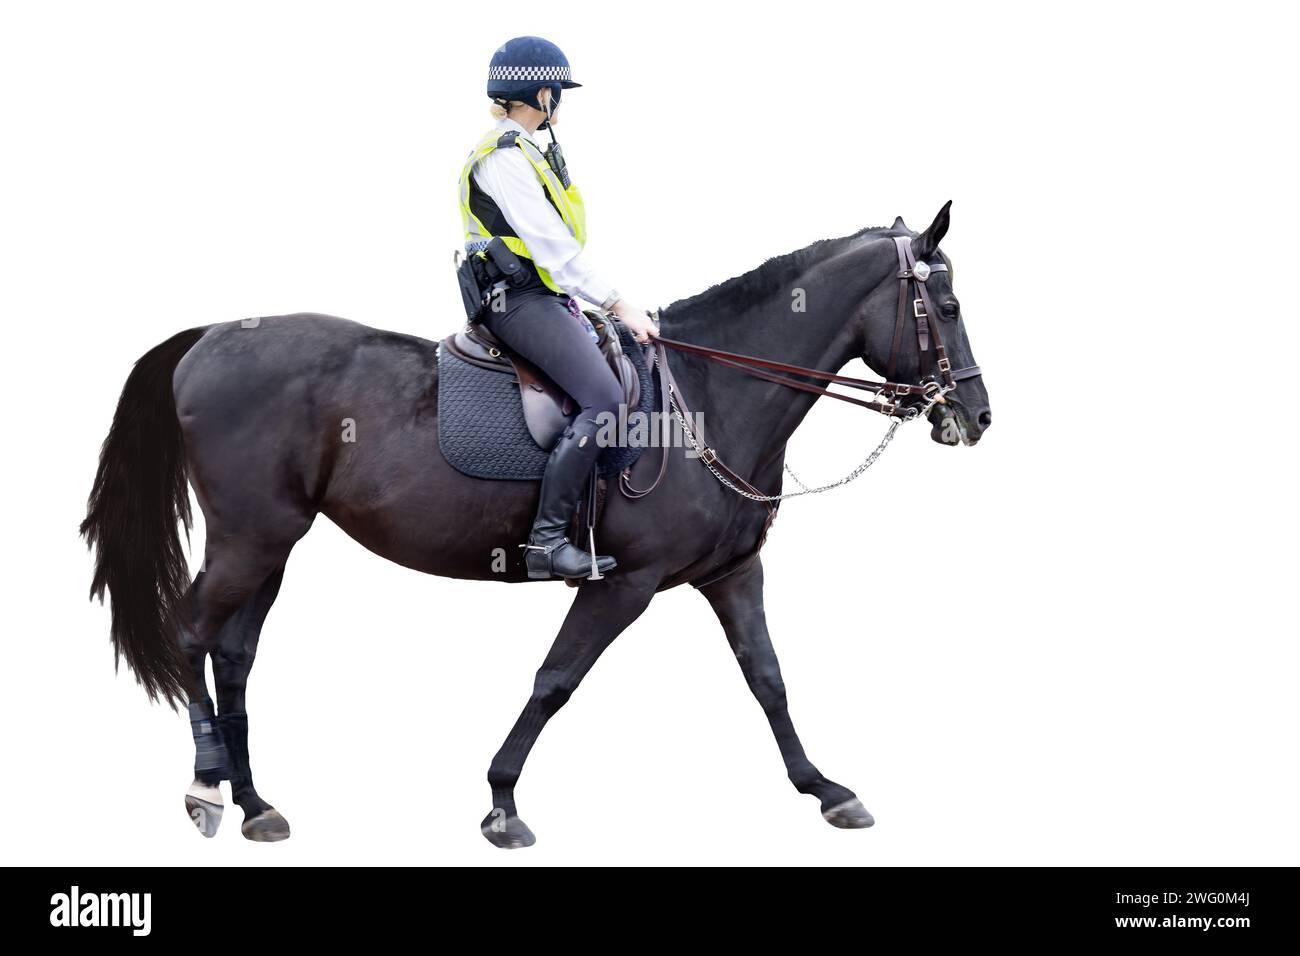 Non identifié policier métropolitain londonien officier femme chevauchant un cheval noir est en service, isolé sur fond blanc avec un espace pour le texte Banque D'Images